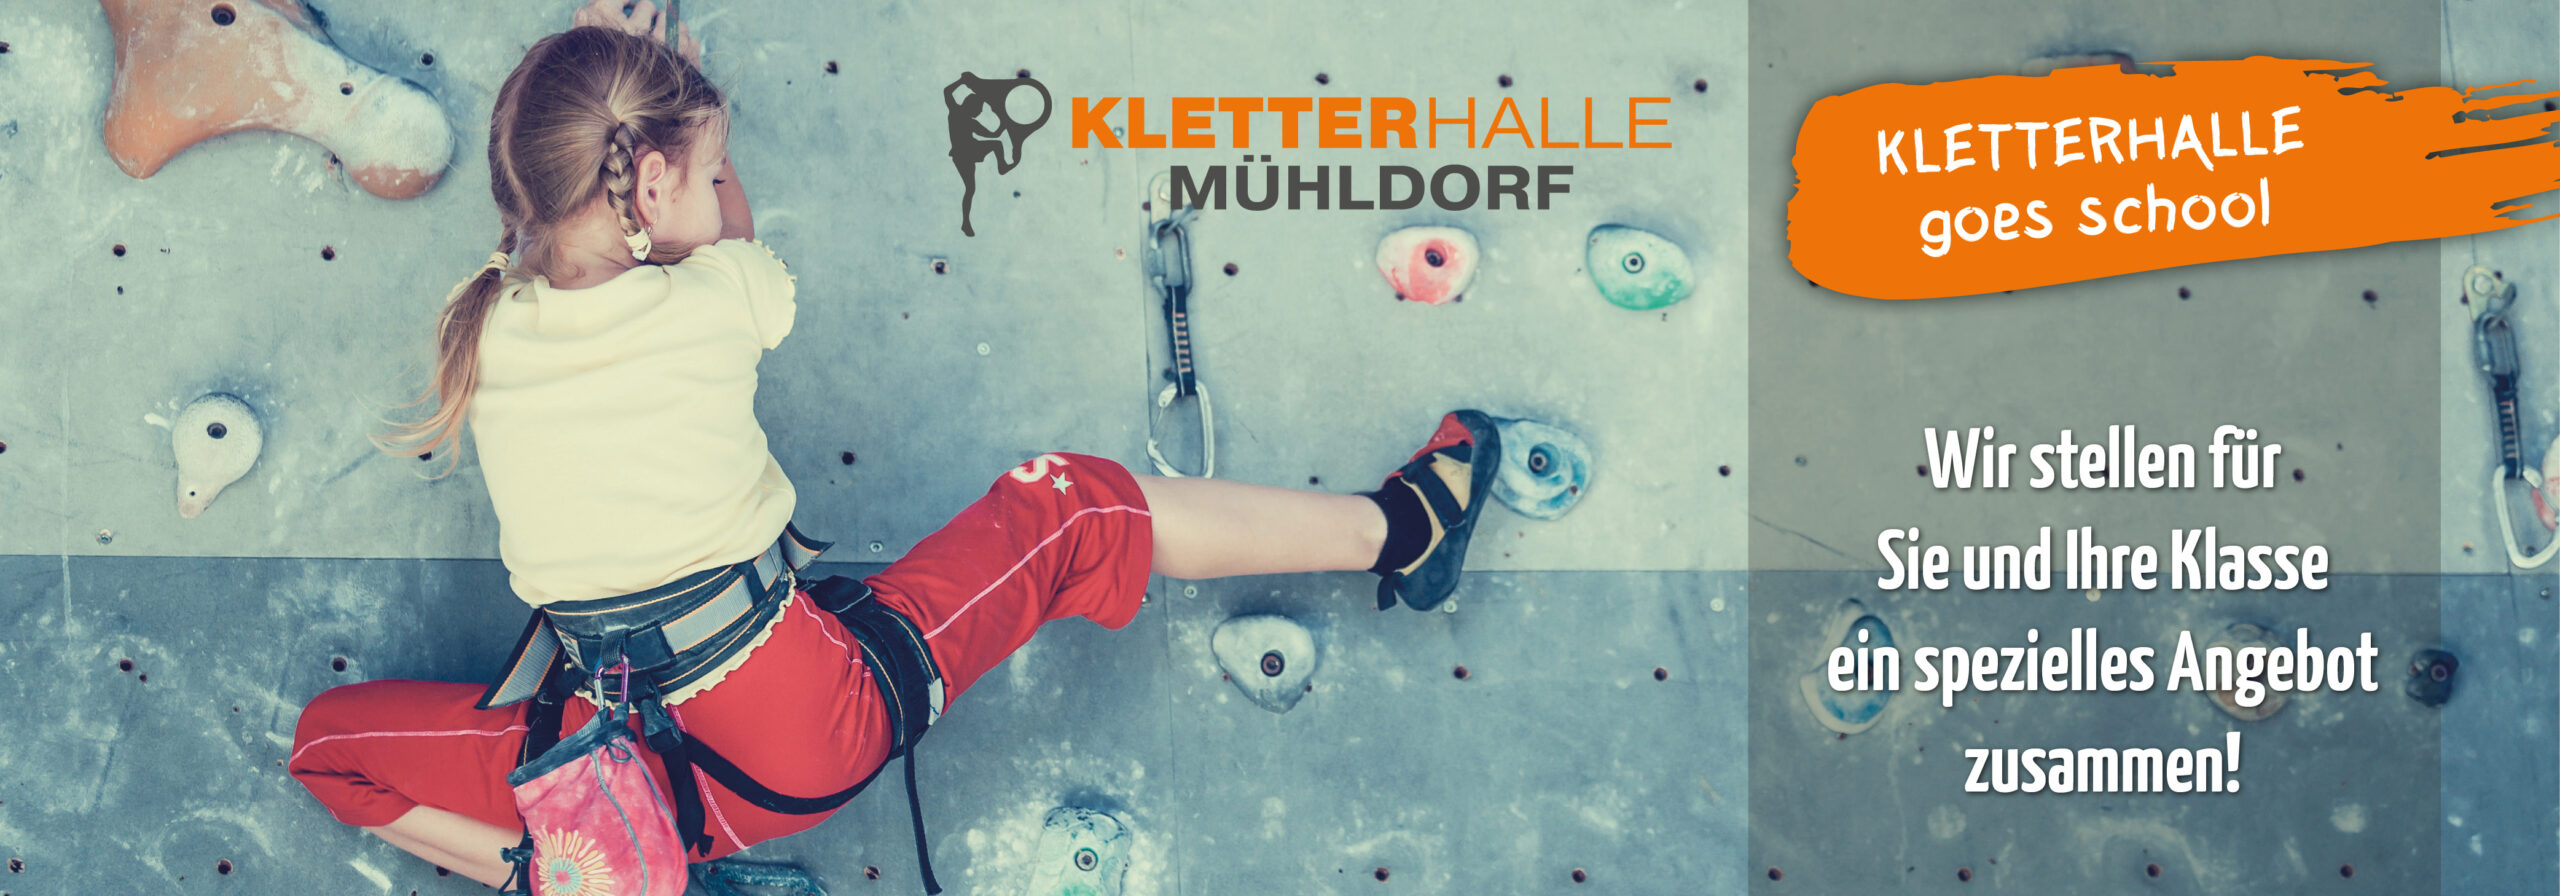 Kletterkurse für Schulklassen und Gruppen in der Kletterhalle Mühldorf